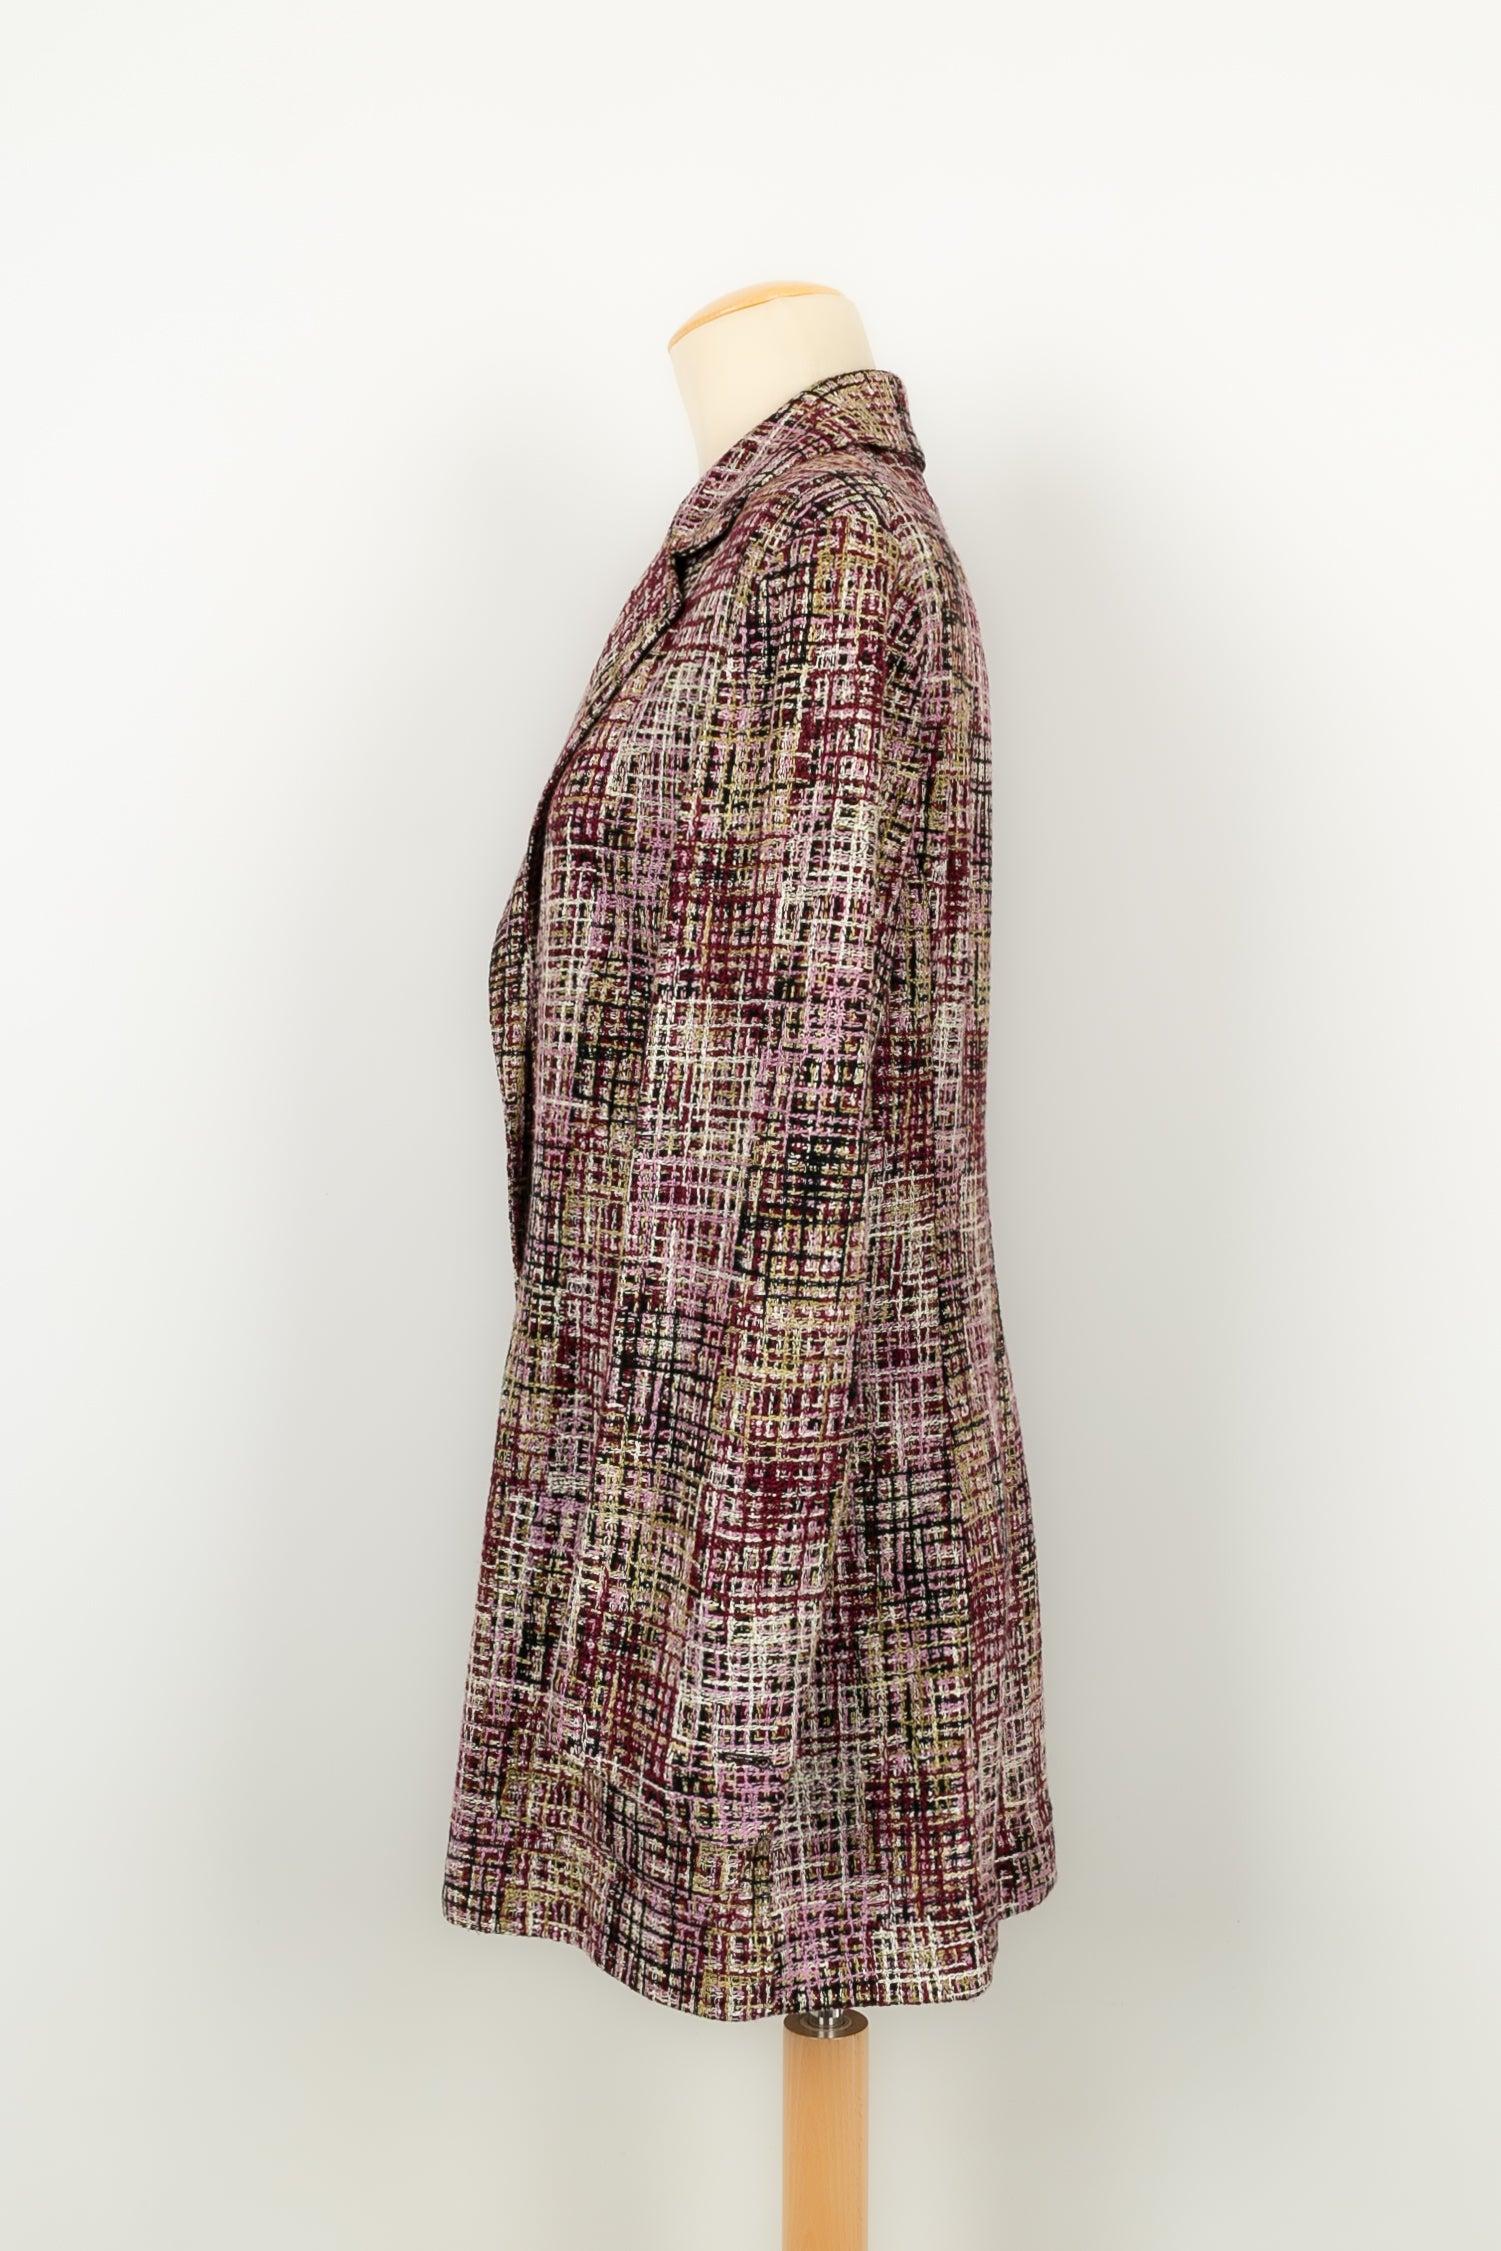 Chanel - (Fabriqué en France) Veste en tweed dans les tons rose, violet, vert et bordeaux. Taille 44FR. Collectional printemps/été 1998.

Informations complémentaires :
Condit : Très bon état.
Dimensions : Largeur des épaules : 45 cm - Poitrine : 53